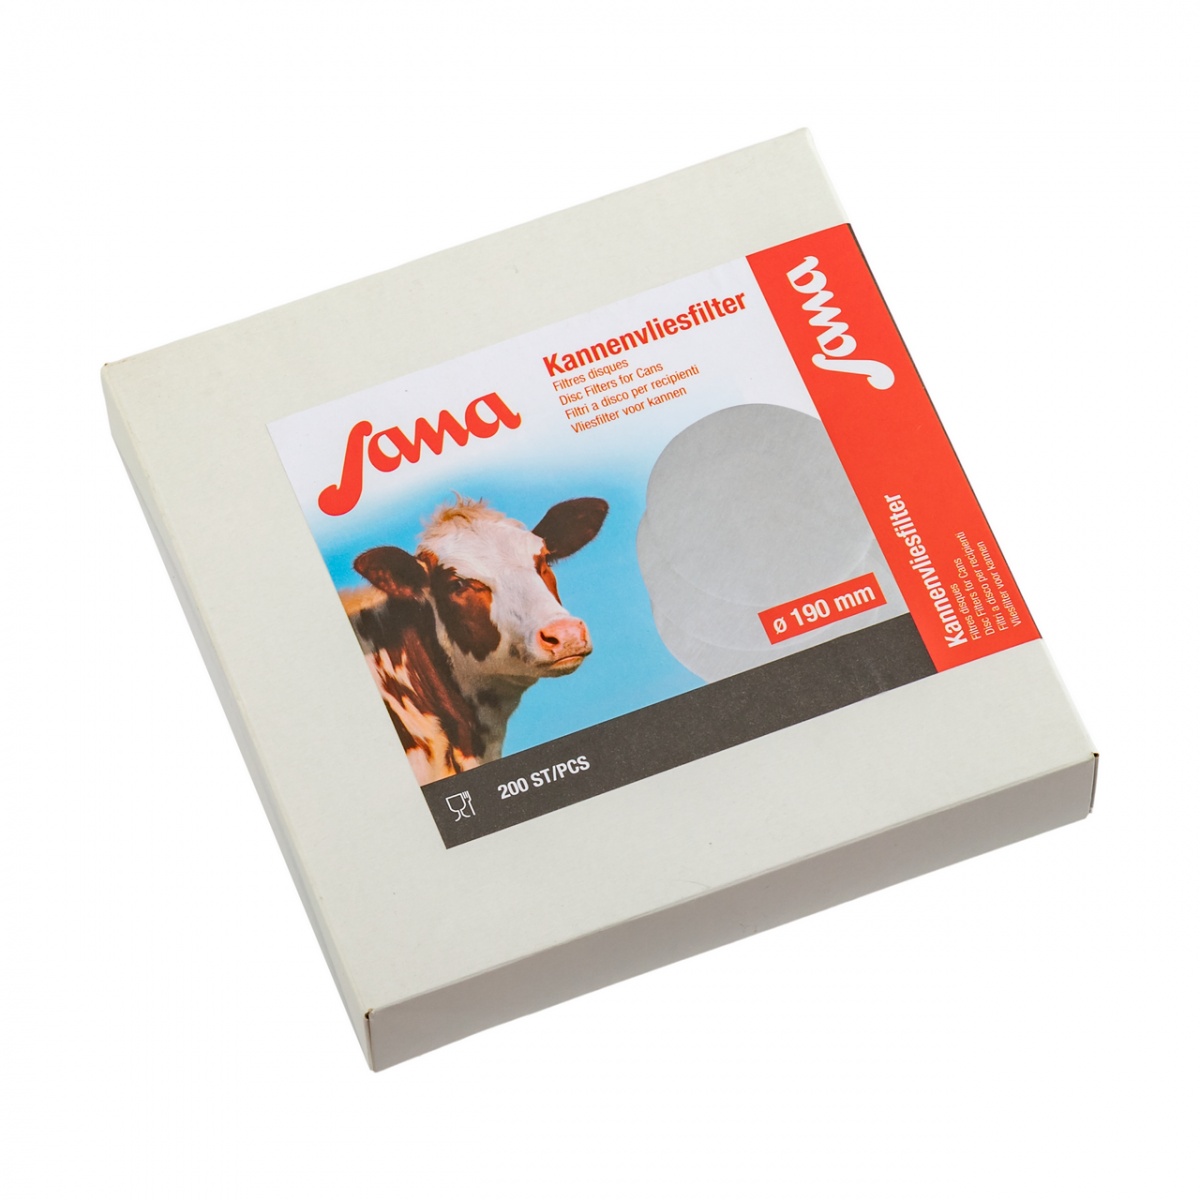 Filtru disc pentru lapte, Sana, 190 mm, 200 buc.